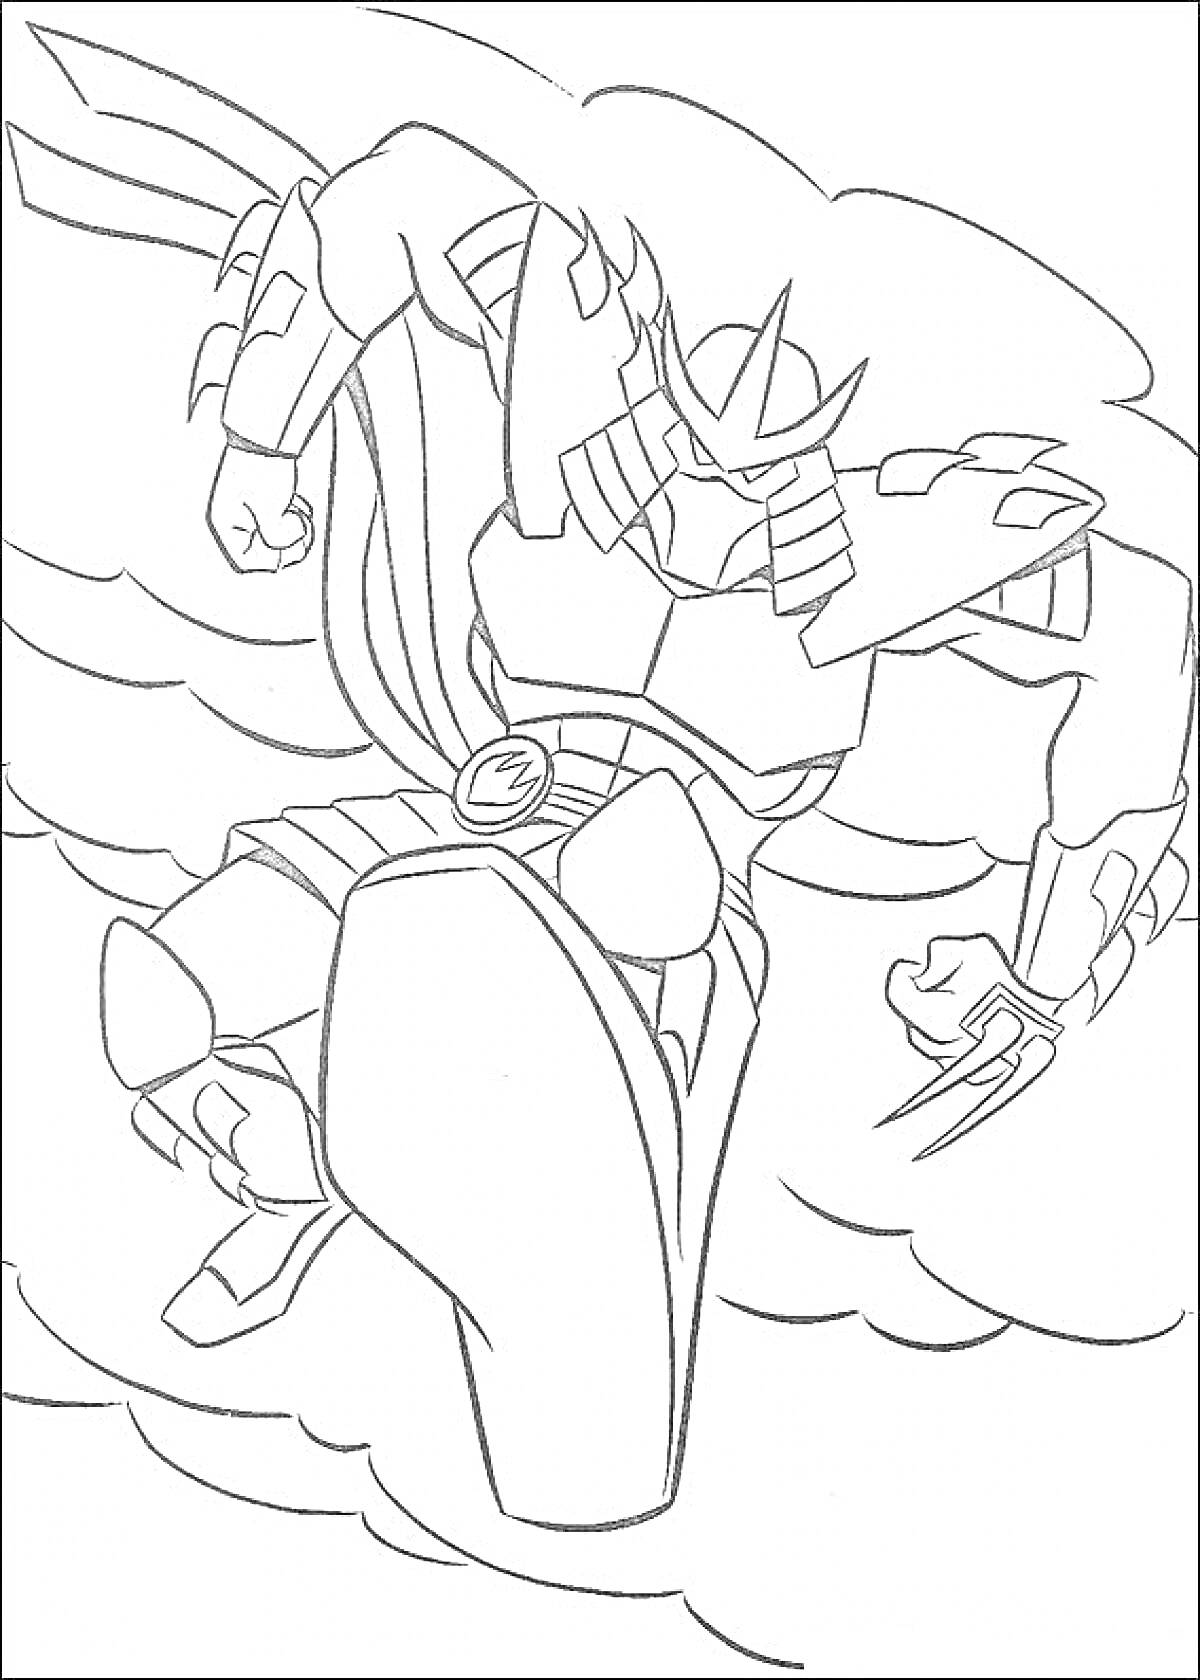 Раскраска Черепашки Ниндзя - боевое изображение персонажа с доспехами, огромной ногой и острым когтем